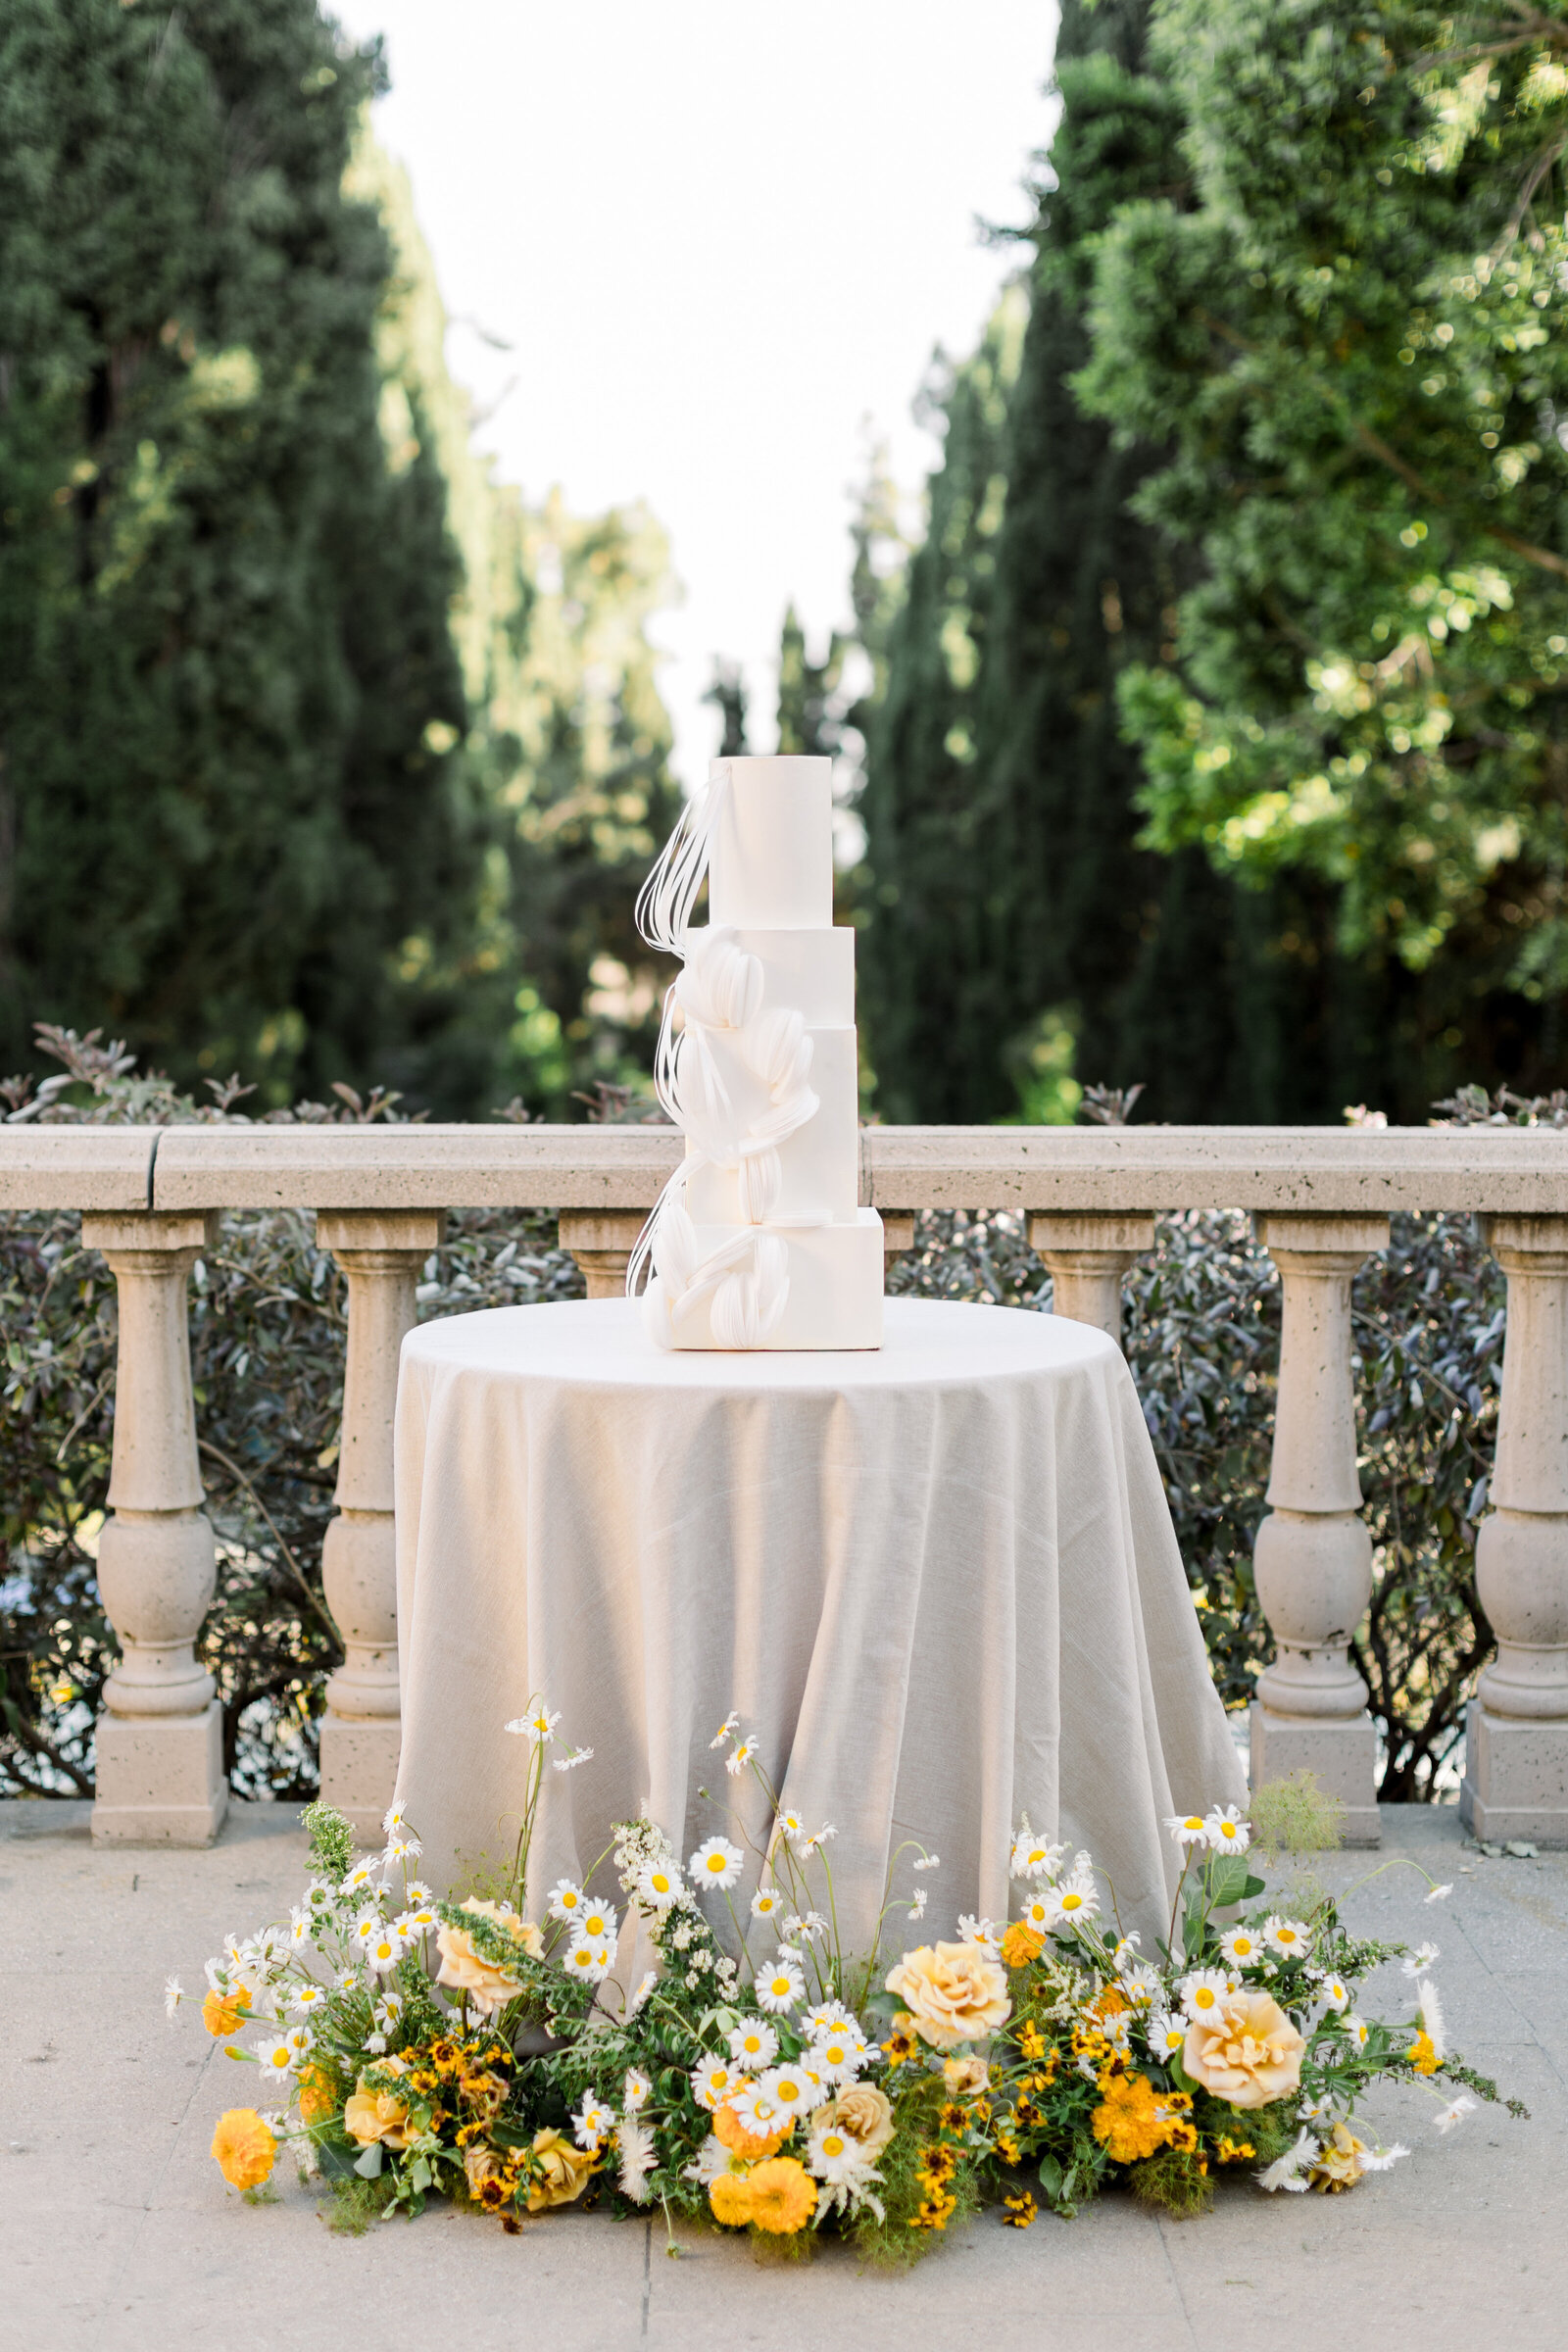 white wedding cake minimal decoration